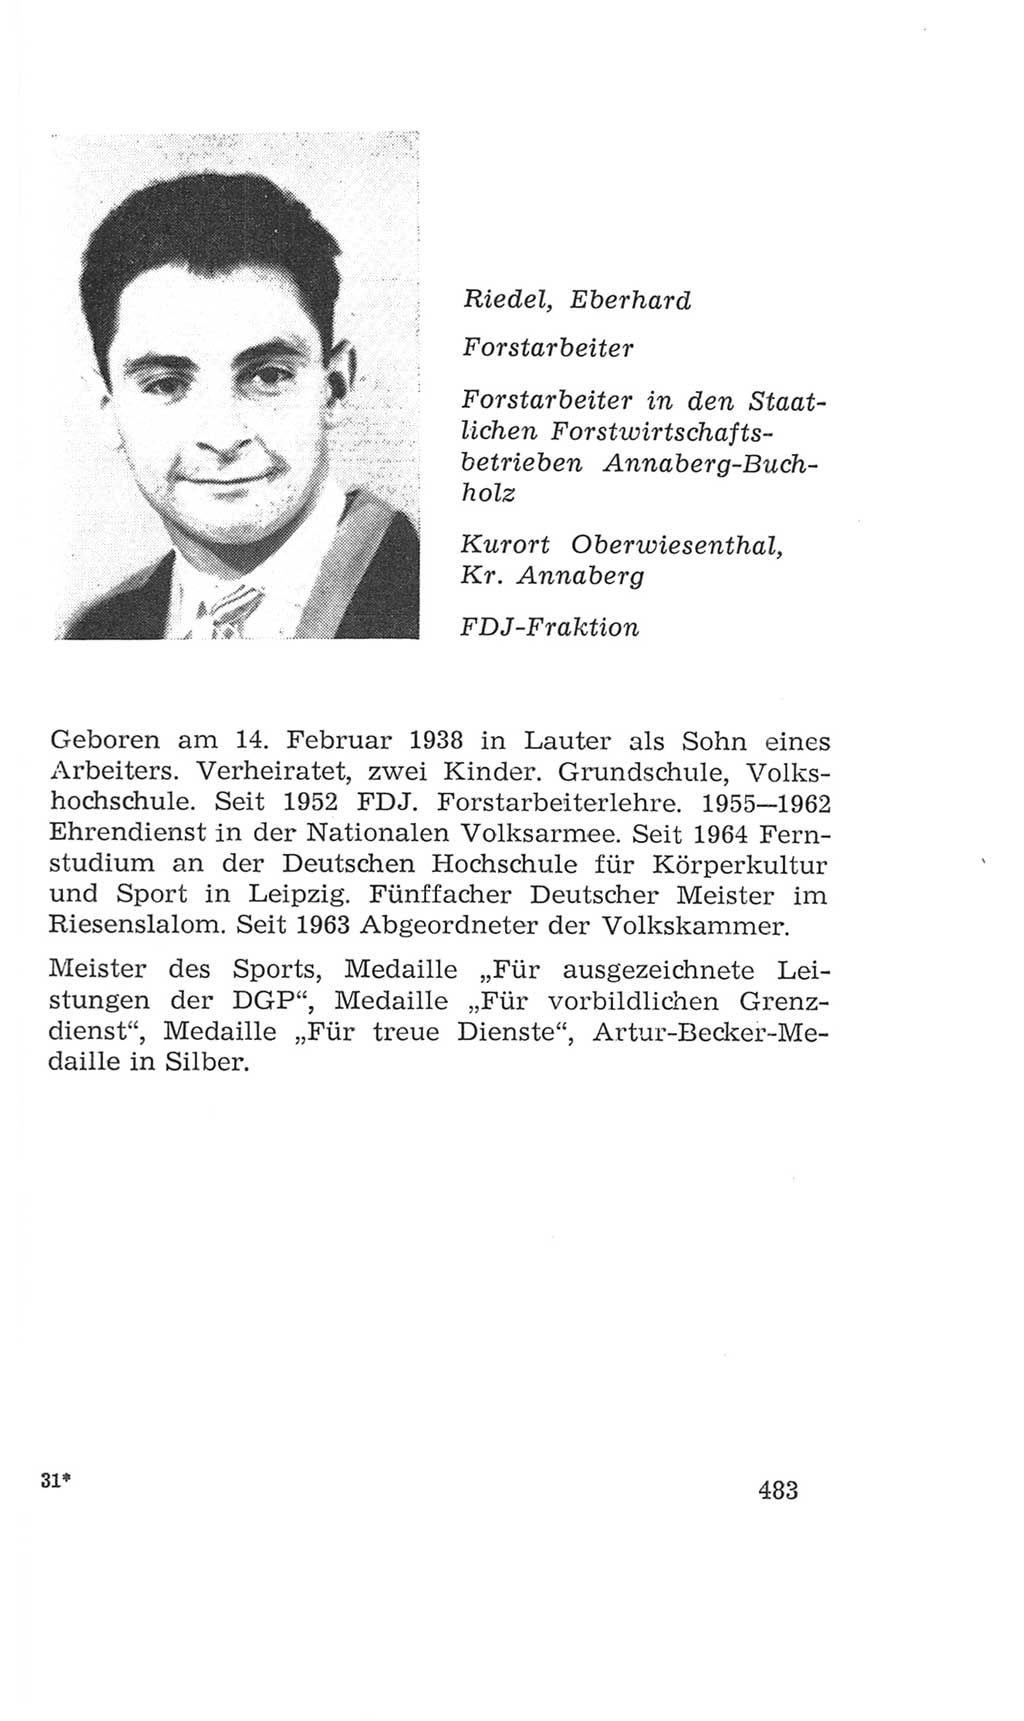 Volkskammer (VK) der Deutschen Demokratischen Republik (DDR), 4. Wahlperiode 1963-1967, Seite 483 (VK. DDR 4. WP. 1963-1967, S. 483)